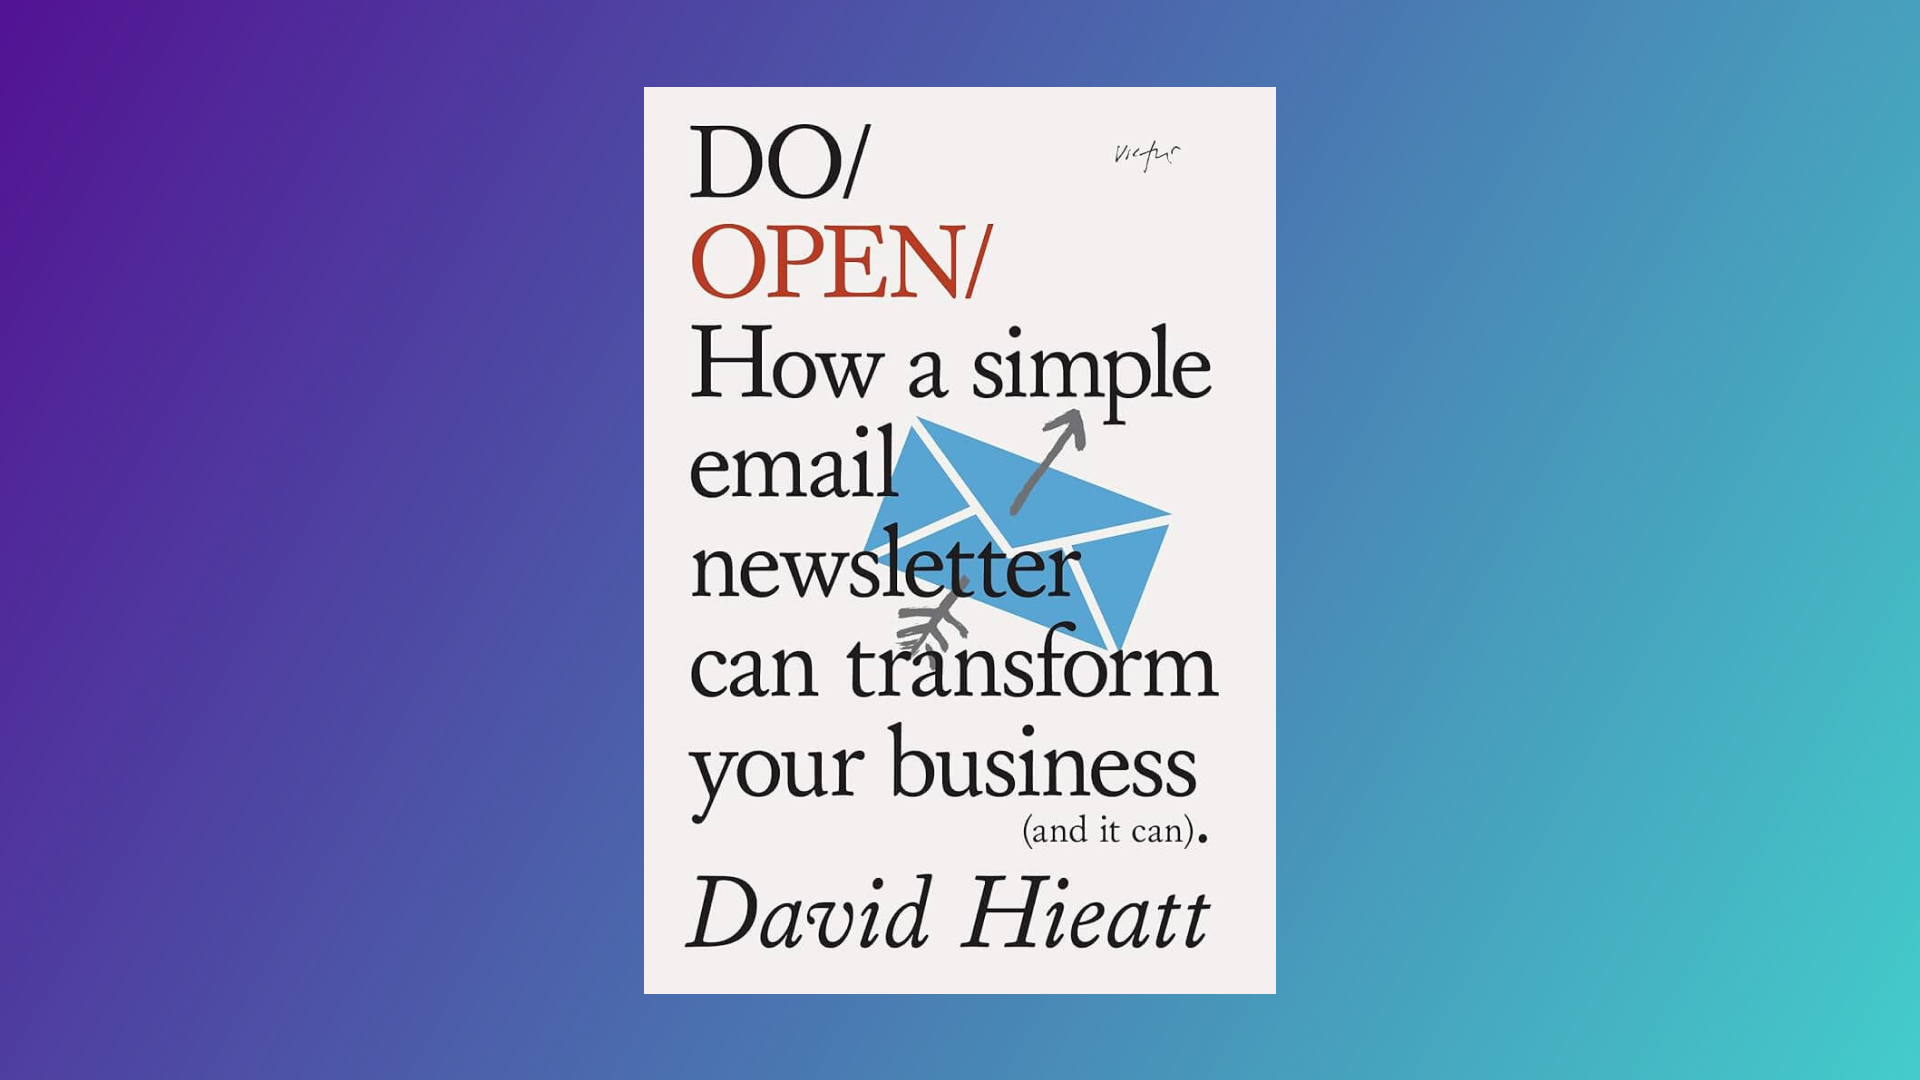 Leituras: “Do Open” por David Hieatt